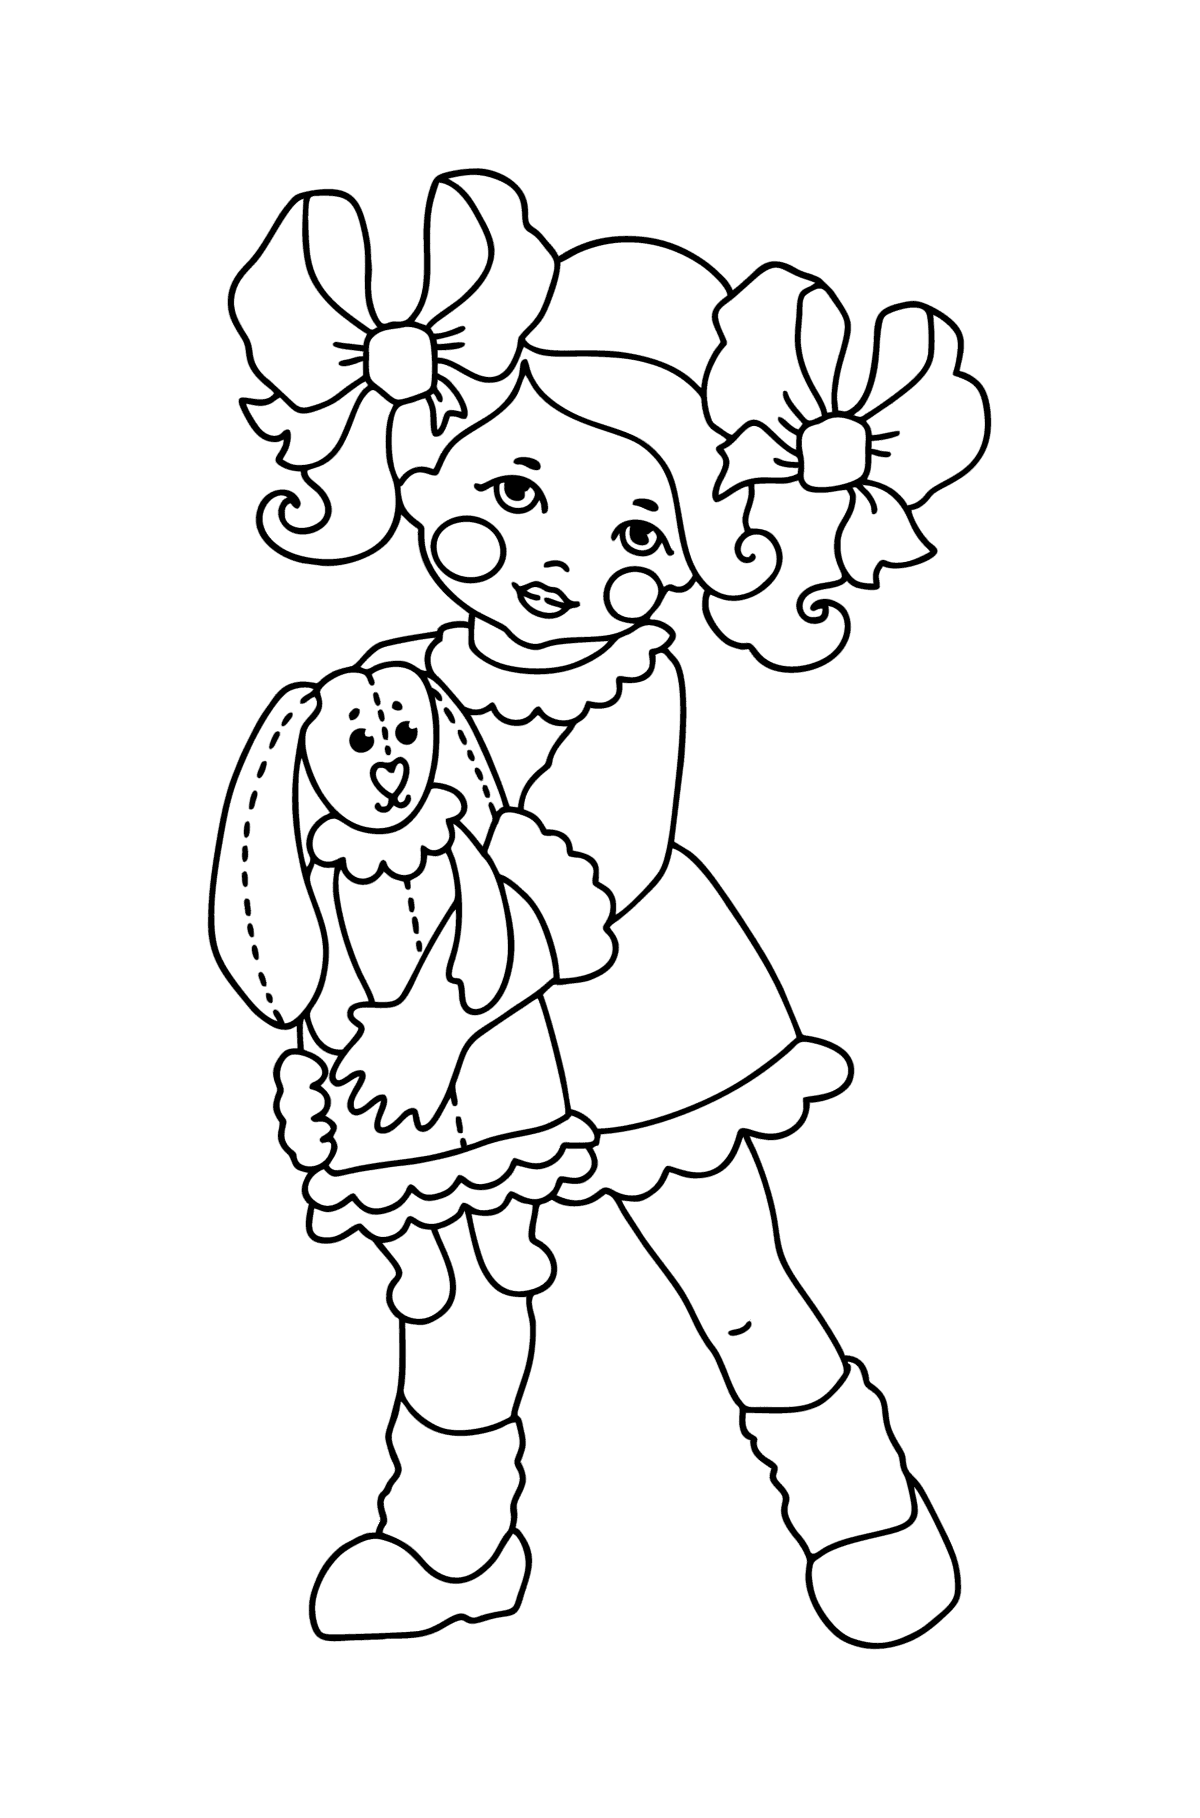 Boyama sayfası Kız ve tavşan - Boyamalar çocuklar için